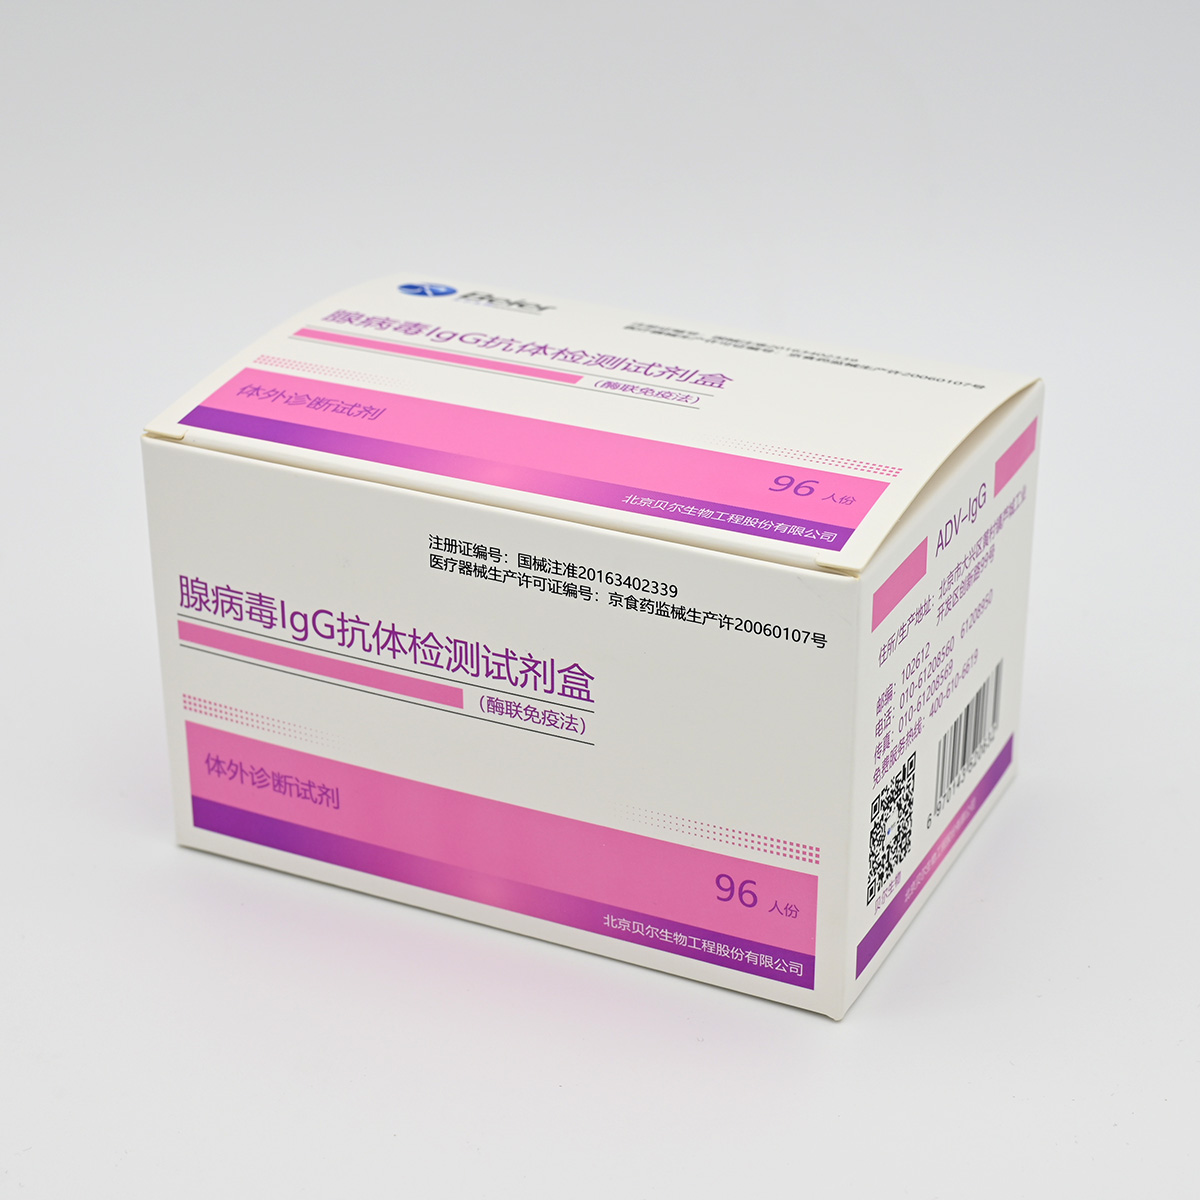 【贝尔】腺病毒IgG抗体检测试剂盒(酶联免疫法)